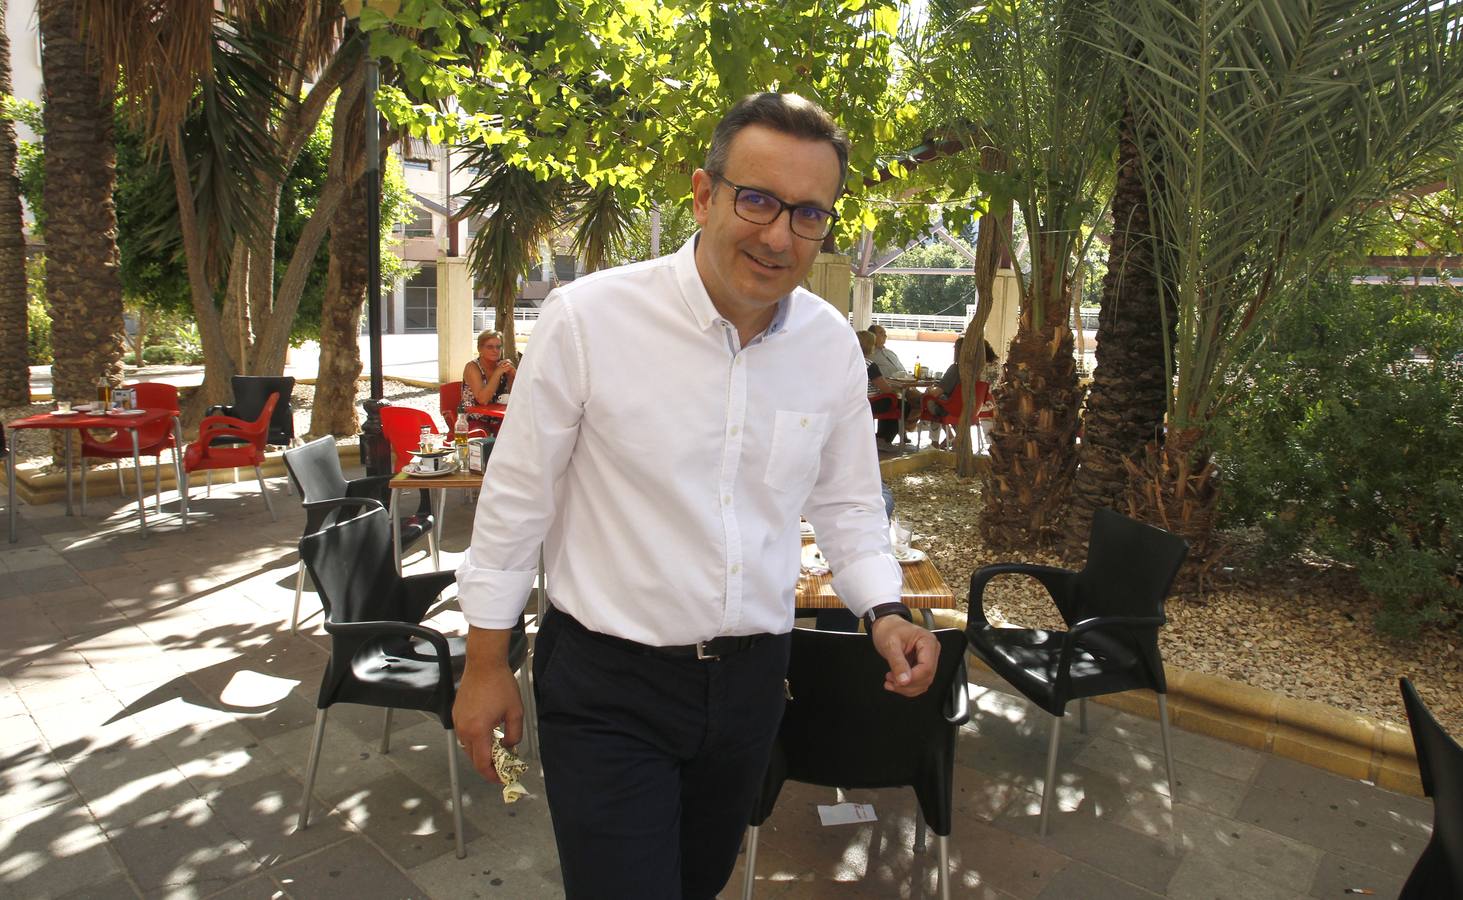 El líder electo del PSOE regional, Diego Conesa, cuidó ovejas, recogió melones y sirvió copas para ayudar en casa antes de ser ‘rockabilly’ con tupé y abogado